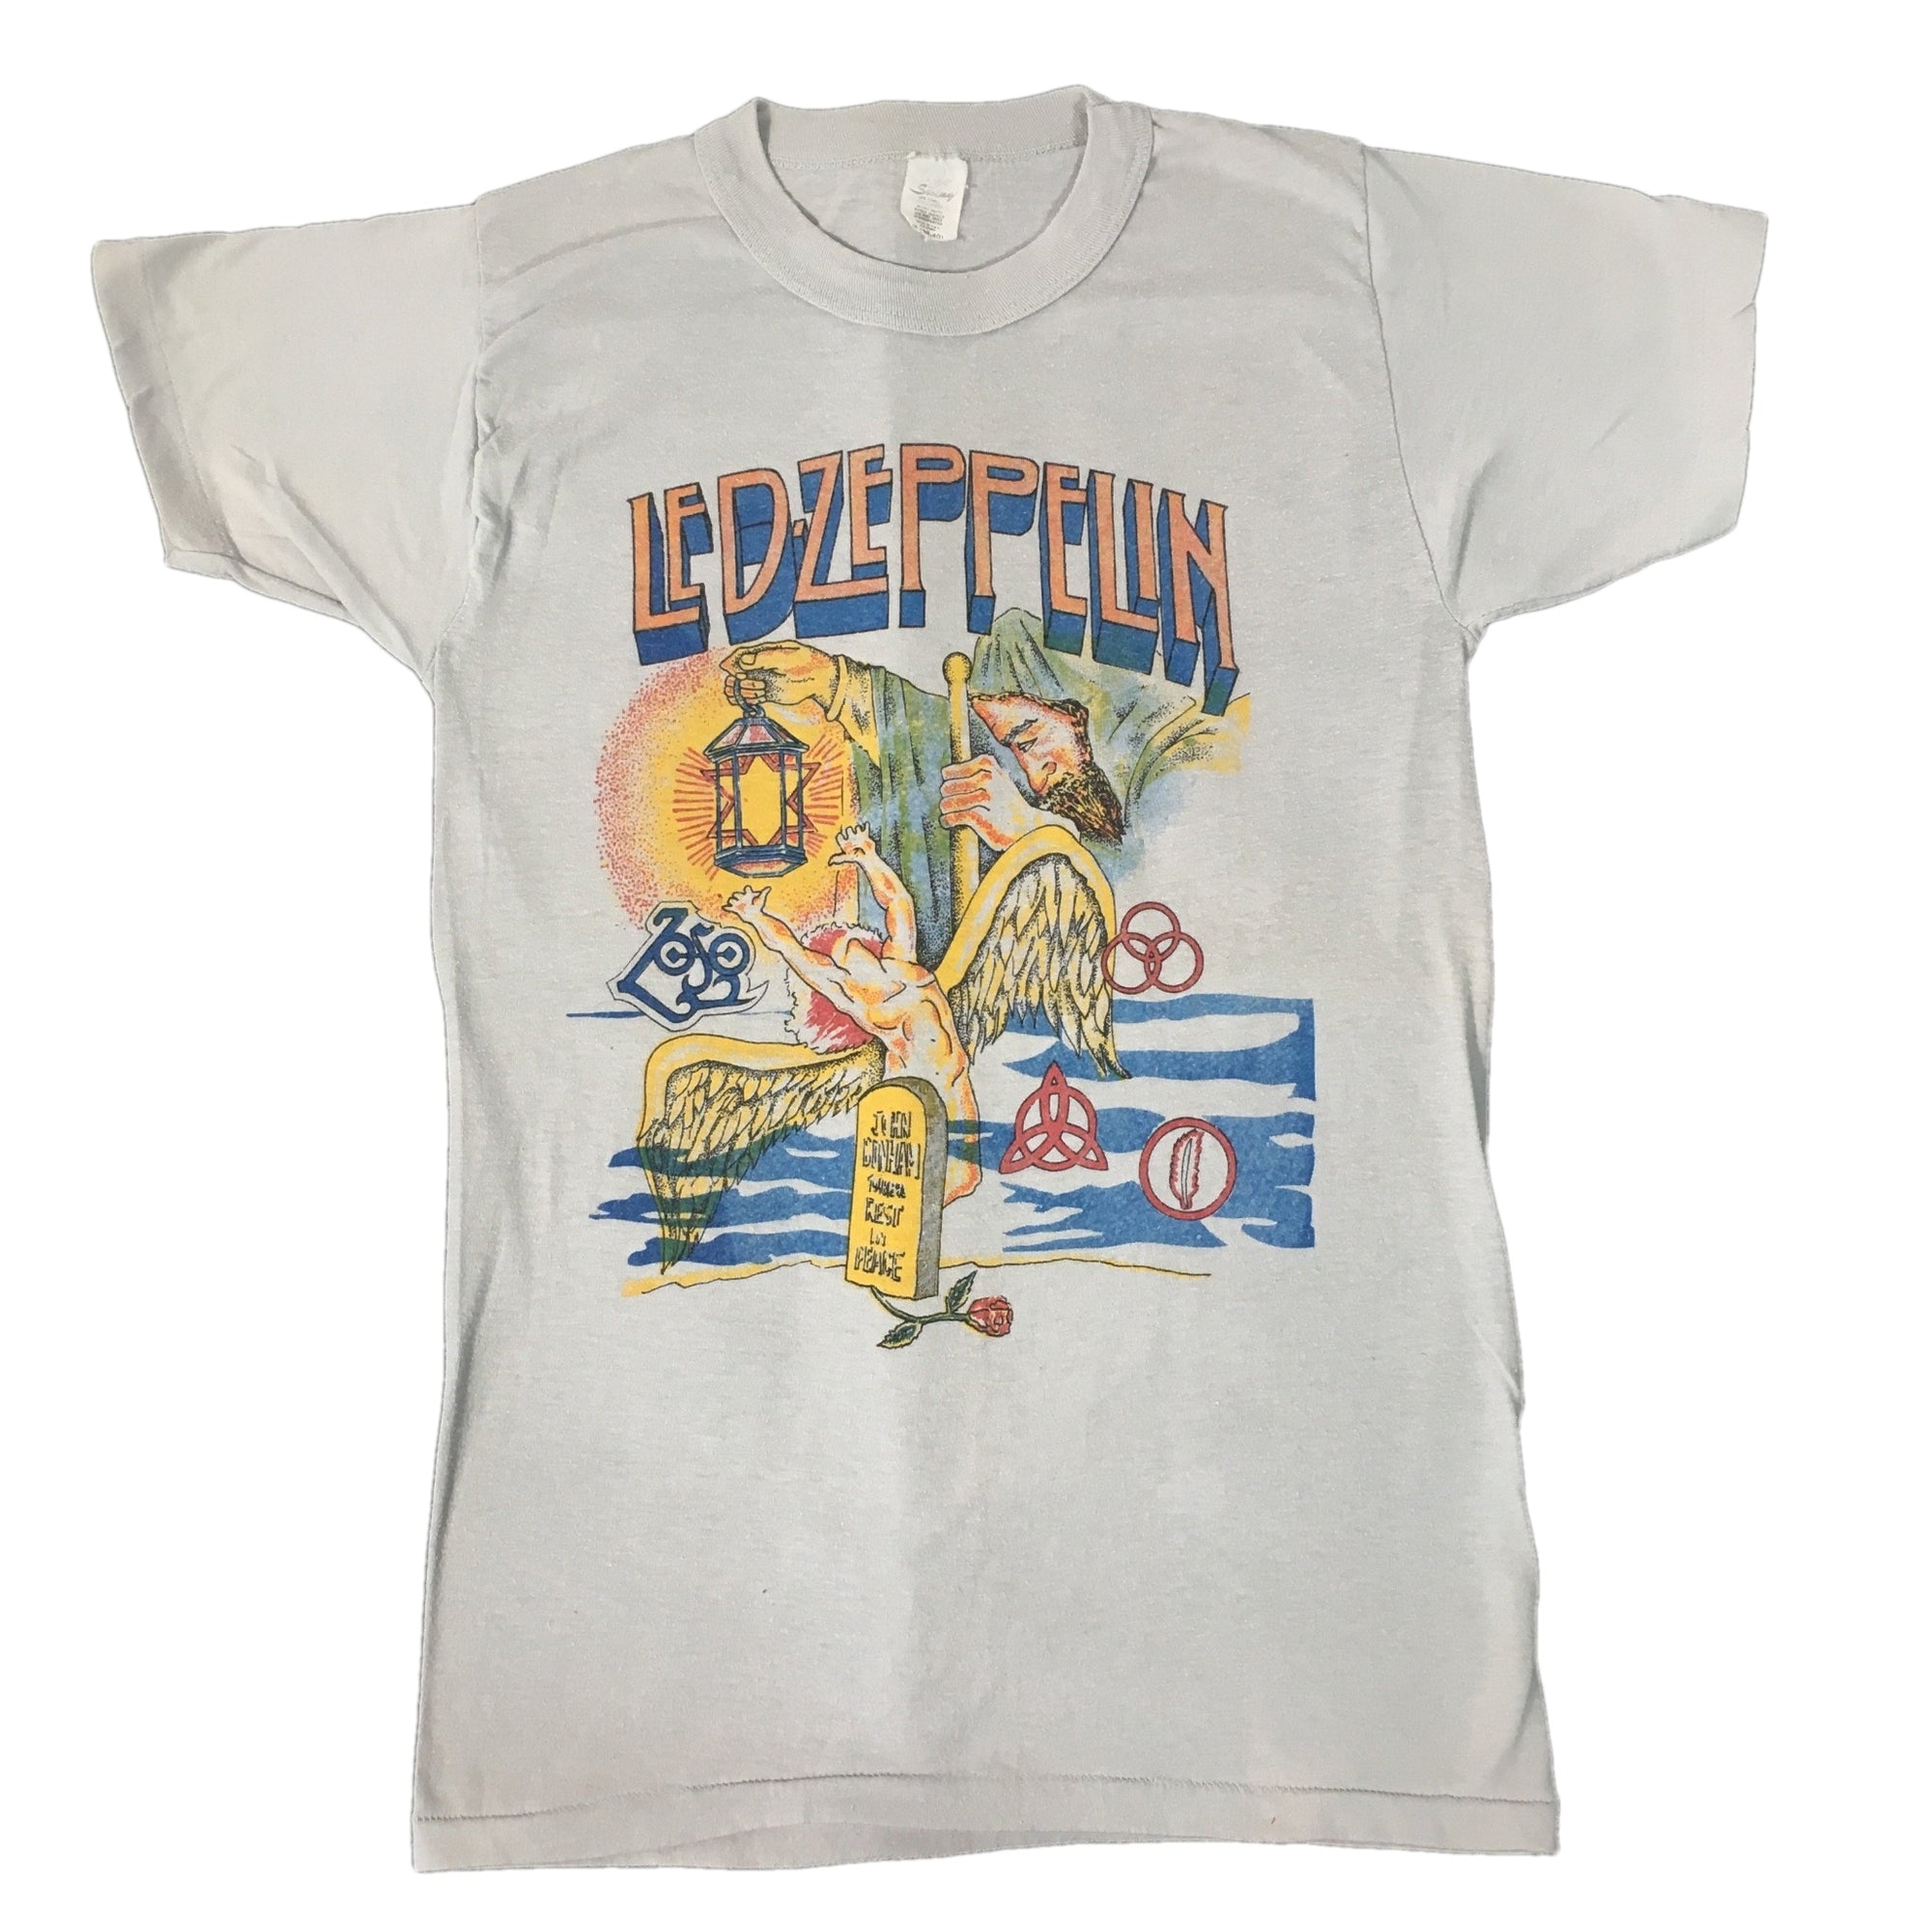 Vintage Led Zeppelin "R.I.P. John Bonham" T-Shirt - jointcustodydc